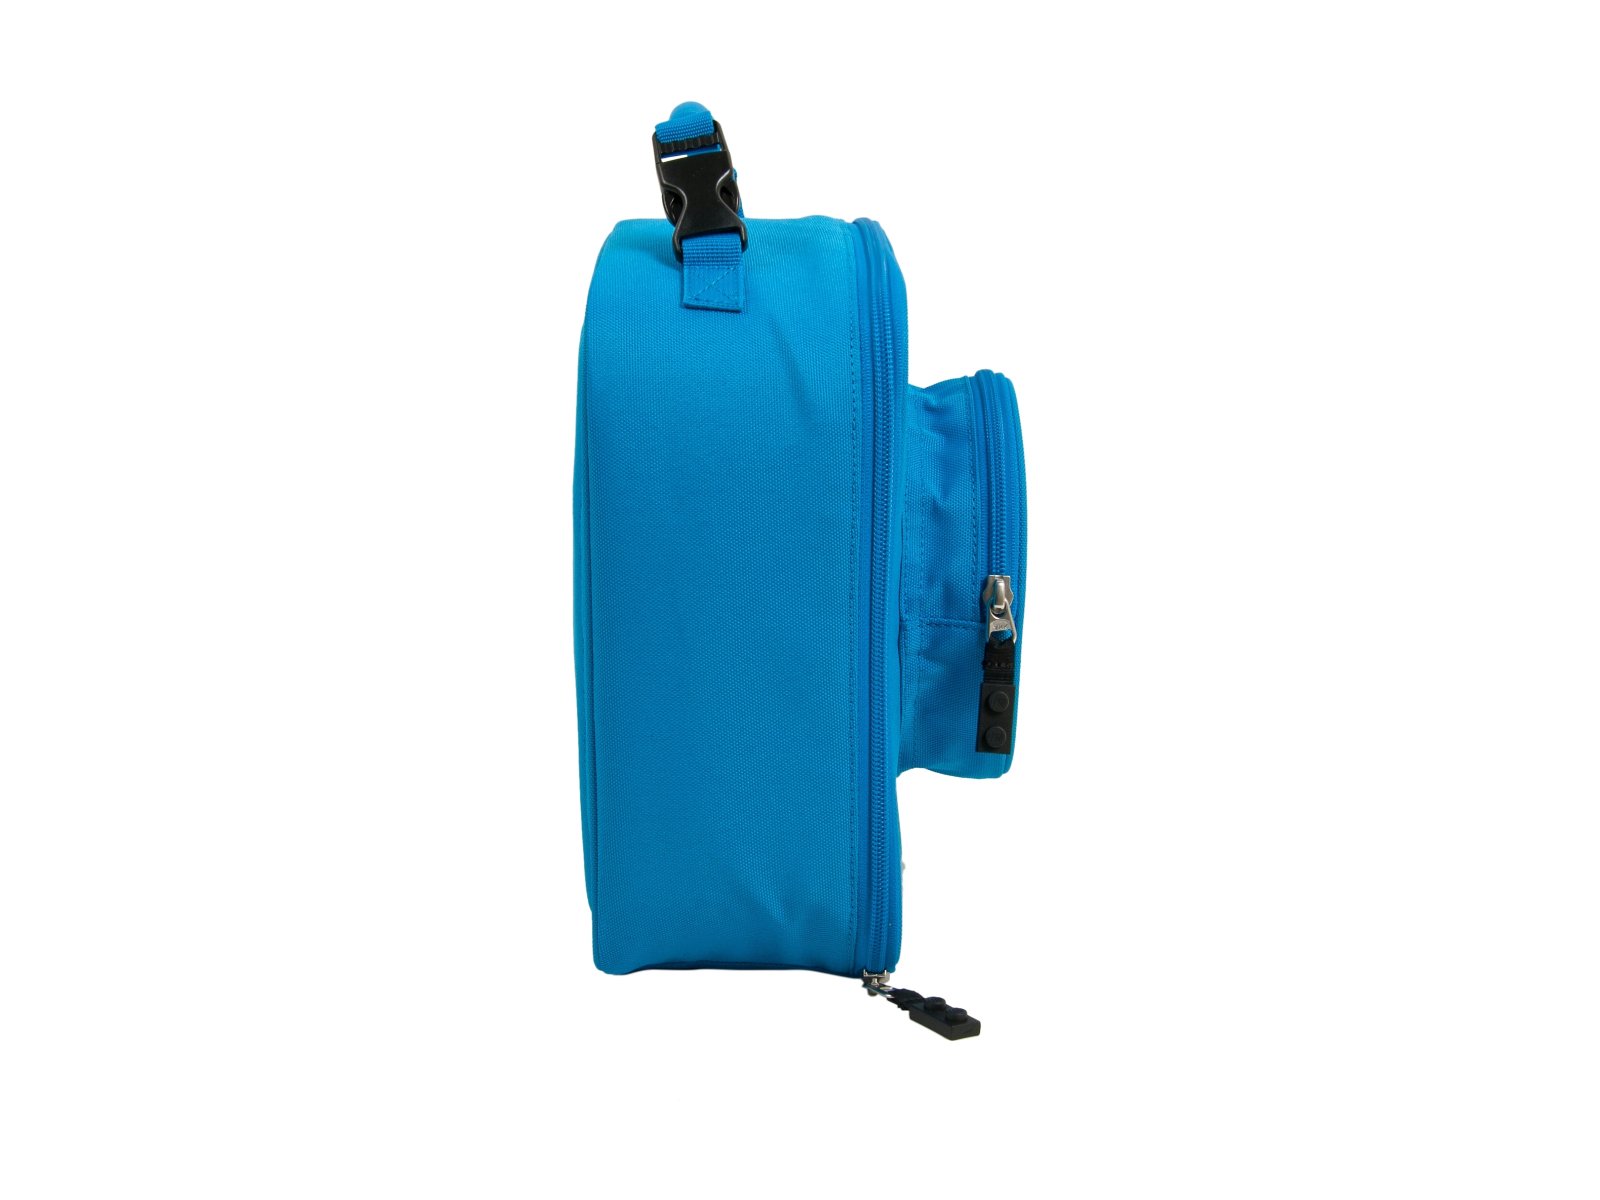 LEGO 5005531 Niebieska torebka śniadaniowa w stylu klocka LEGO®